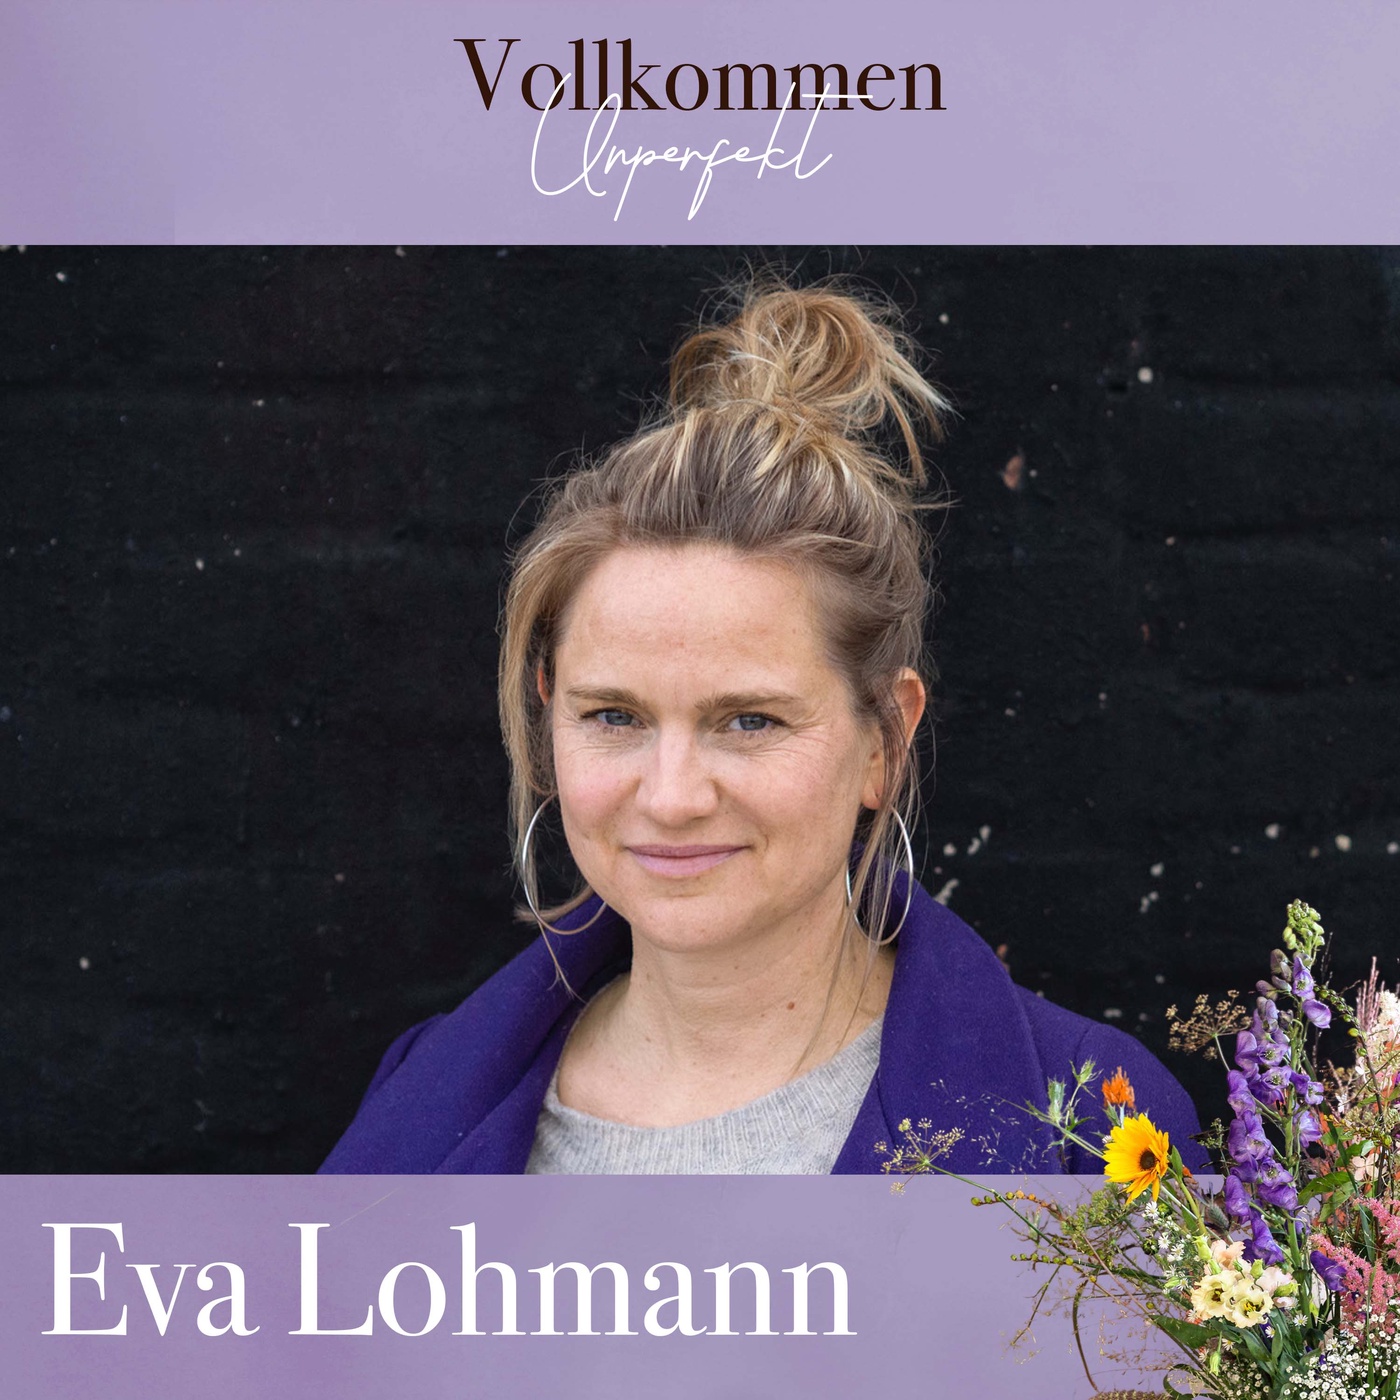 Die große Folge über Introversion mit Eva Lohmann